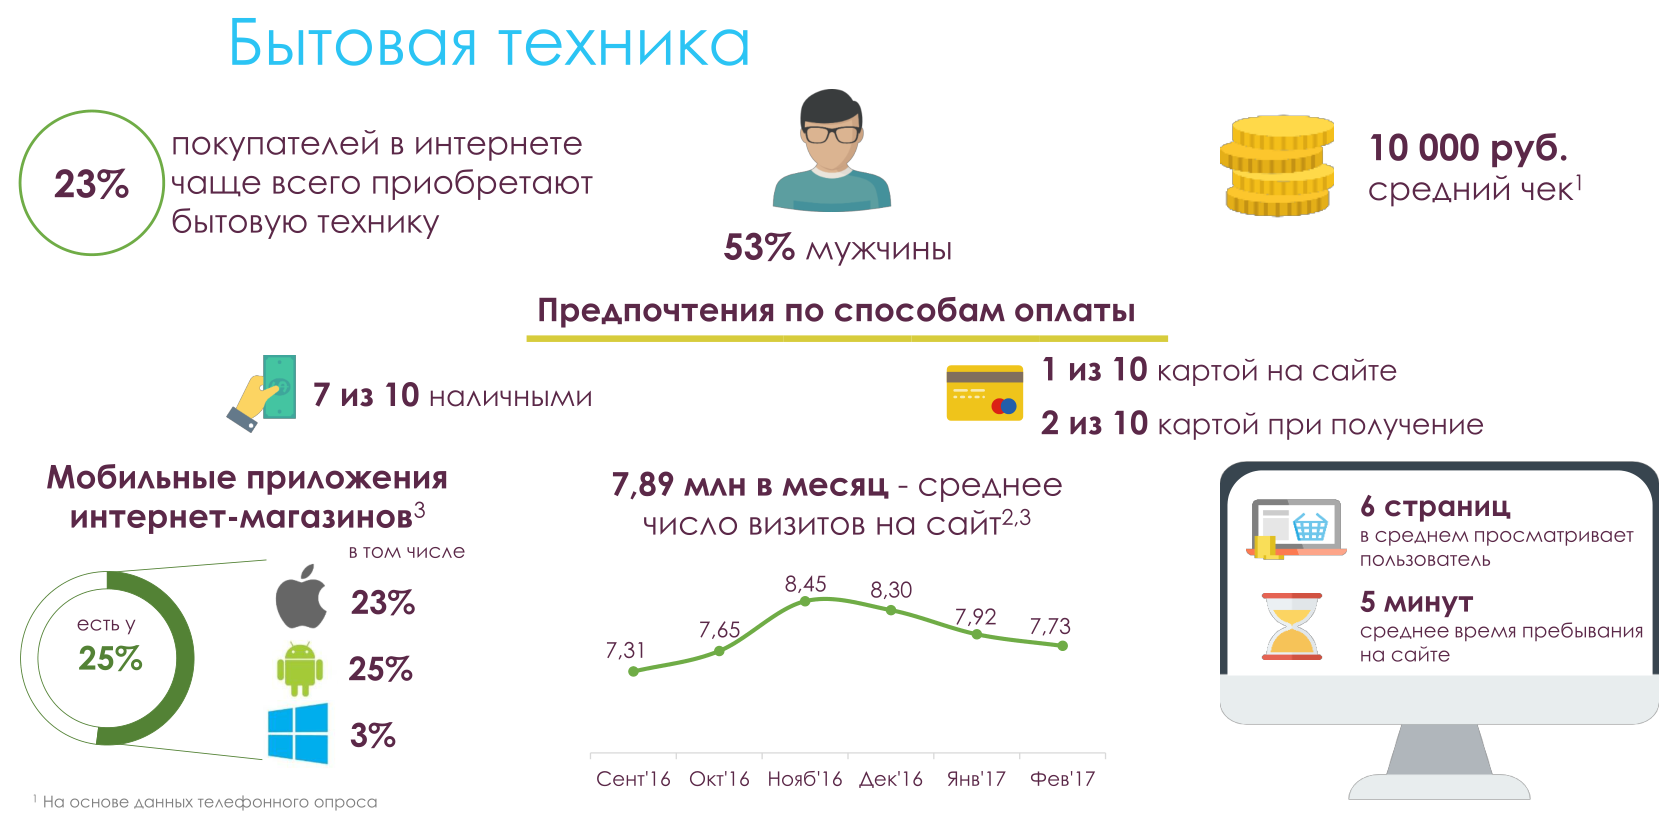 Данные по eCommerce в Москве: исследование московского правительства - 8